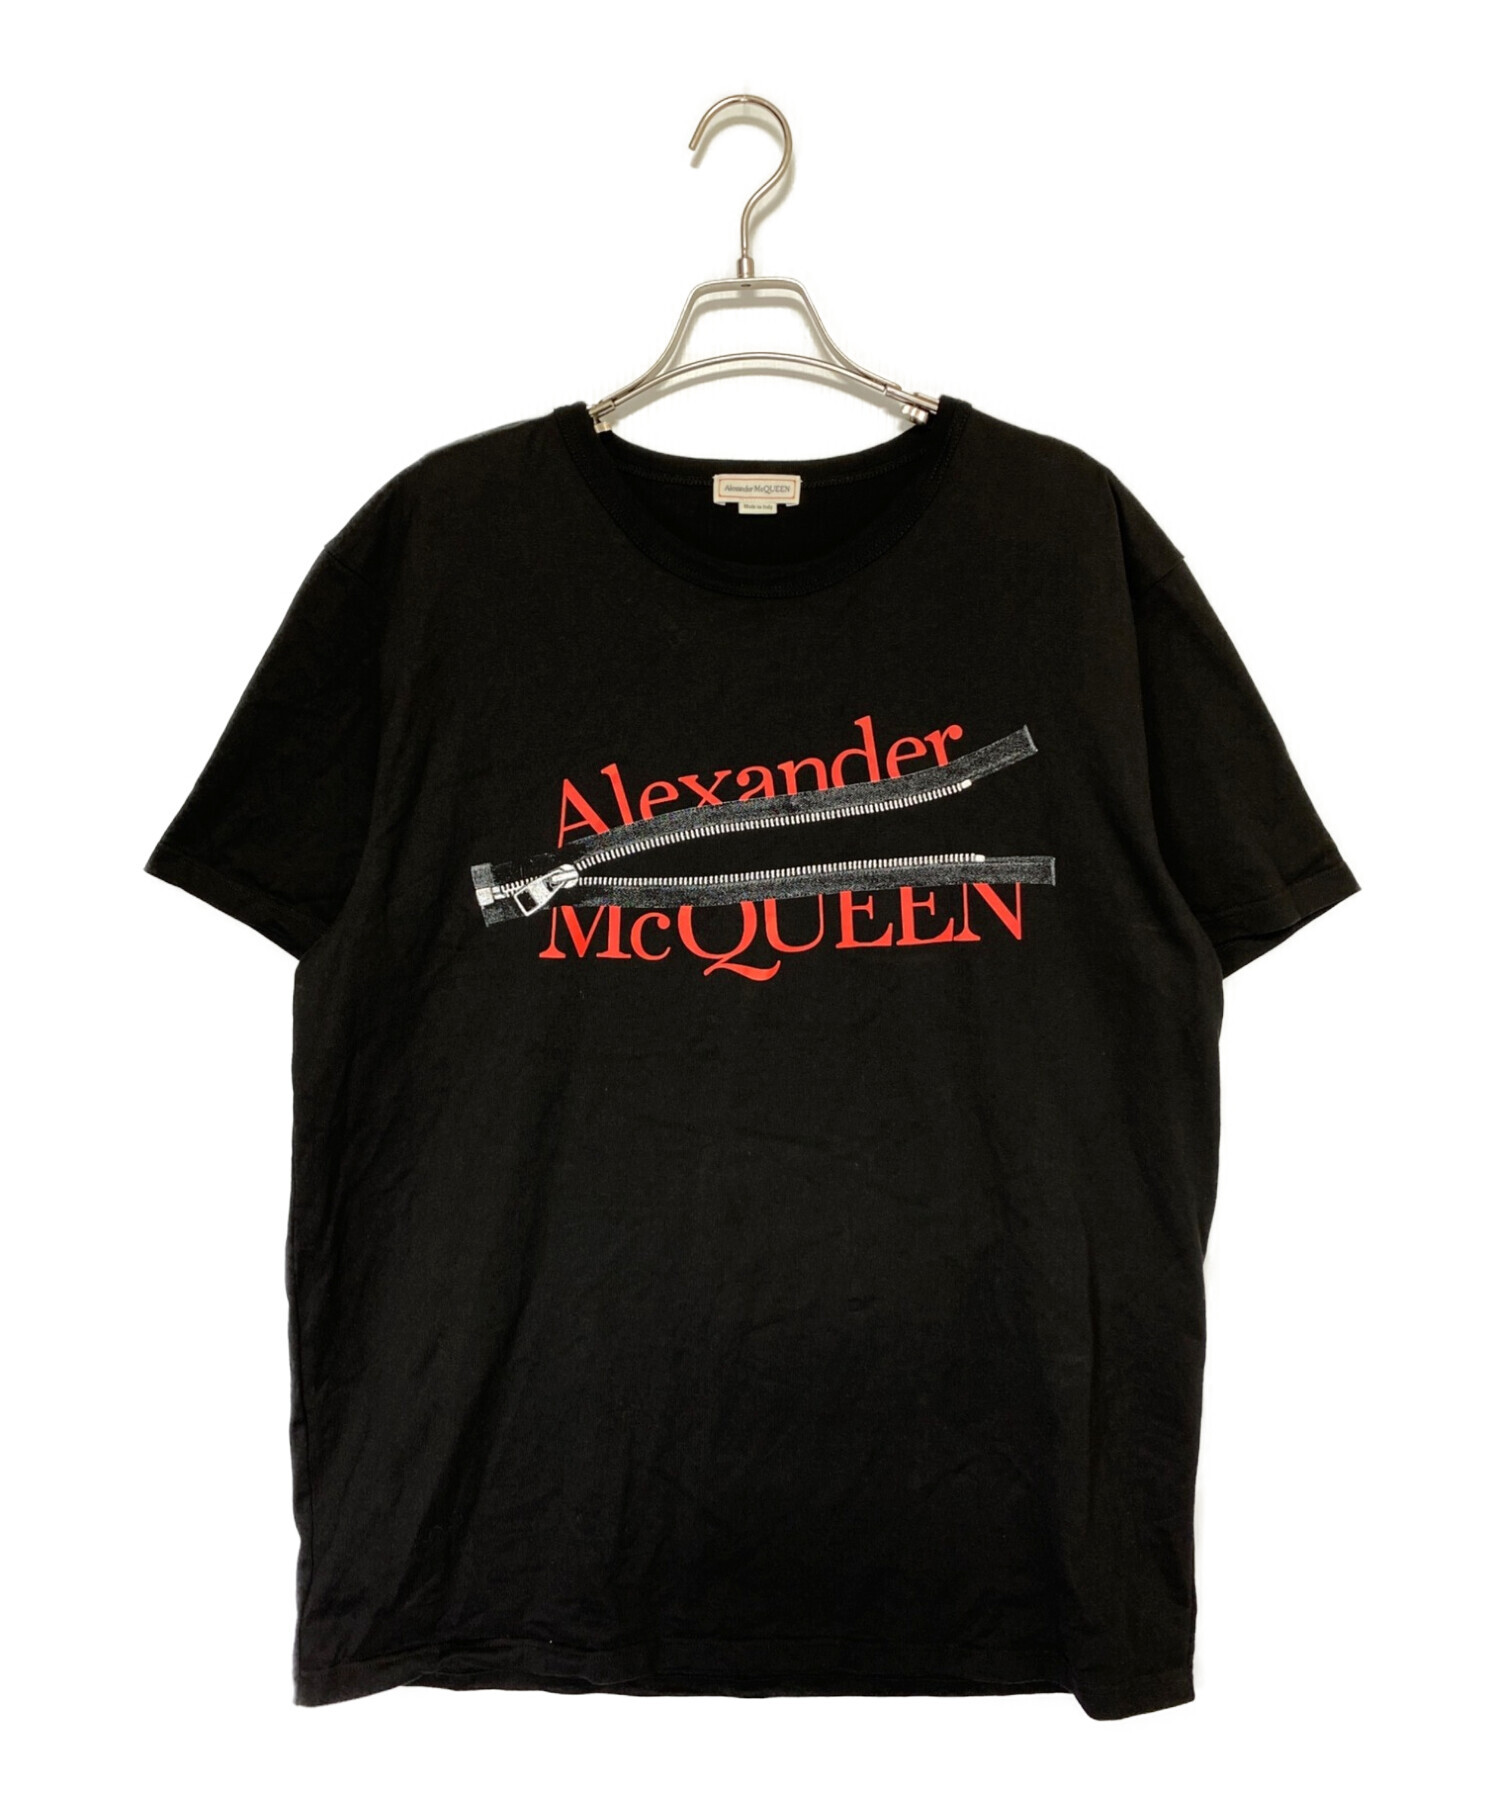 Alexander McQueen アレキサンダーマックイーン 初期 Tシャツ